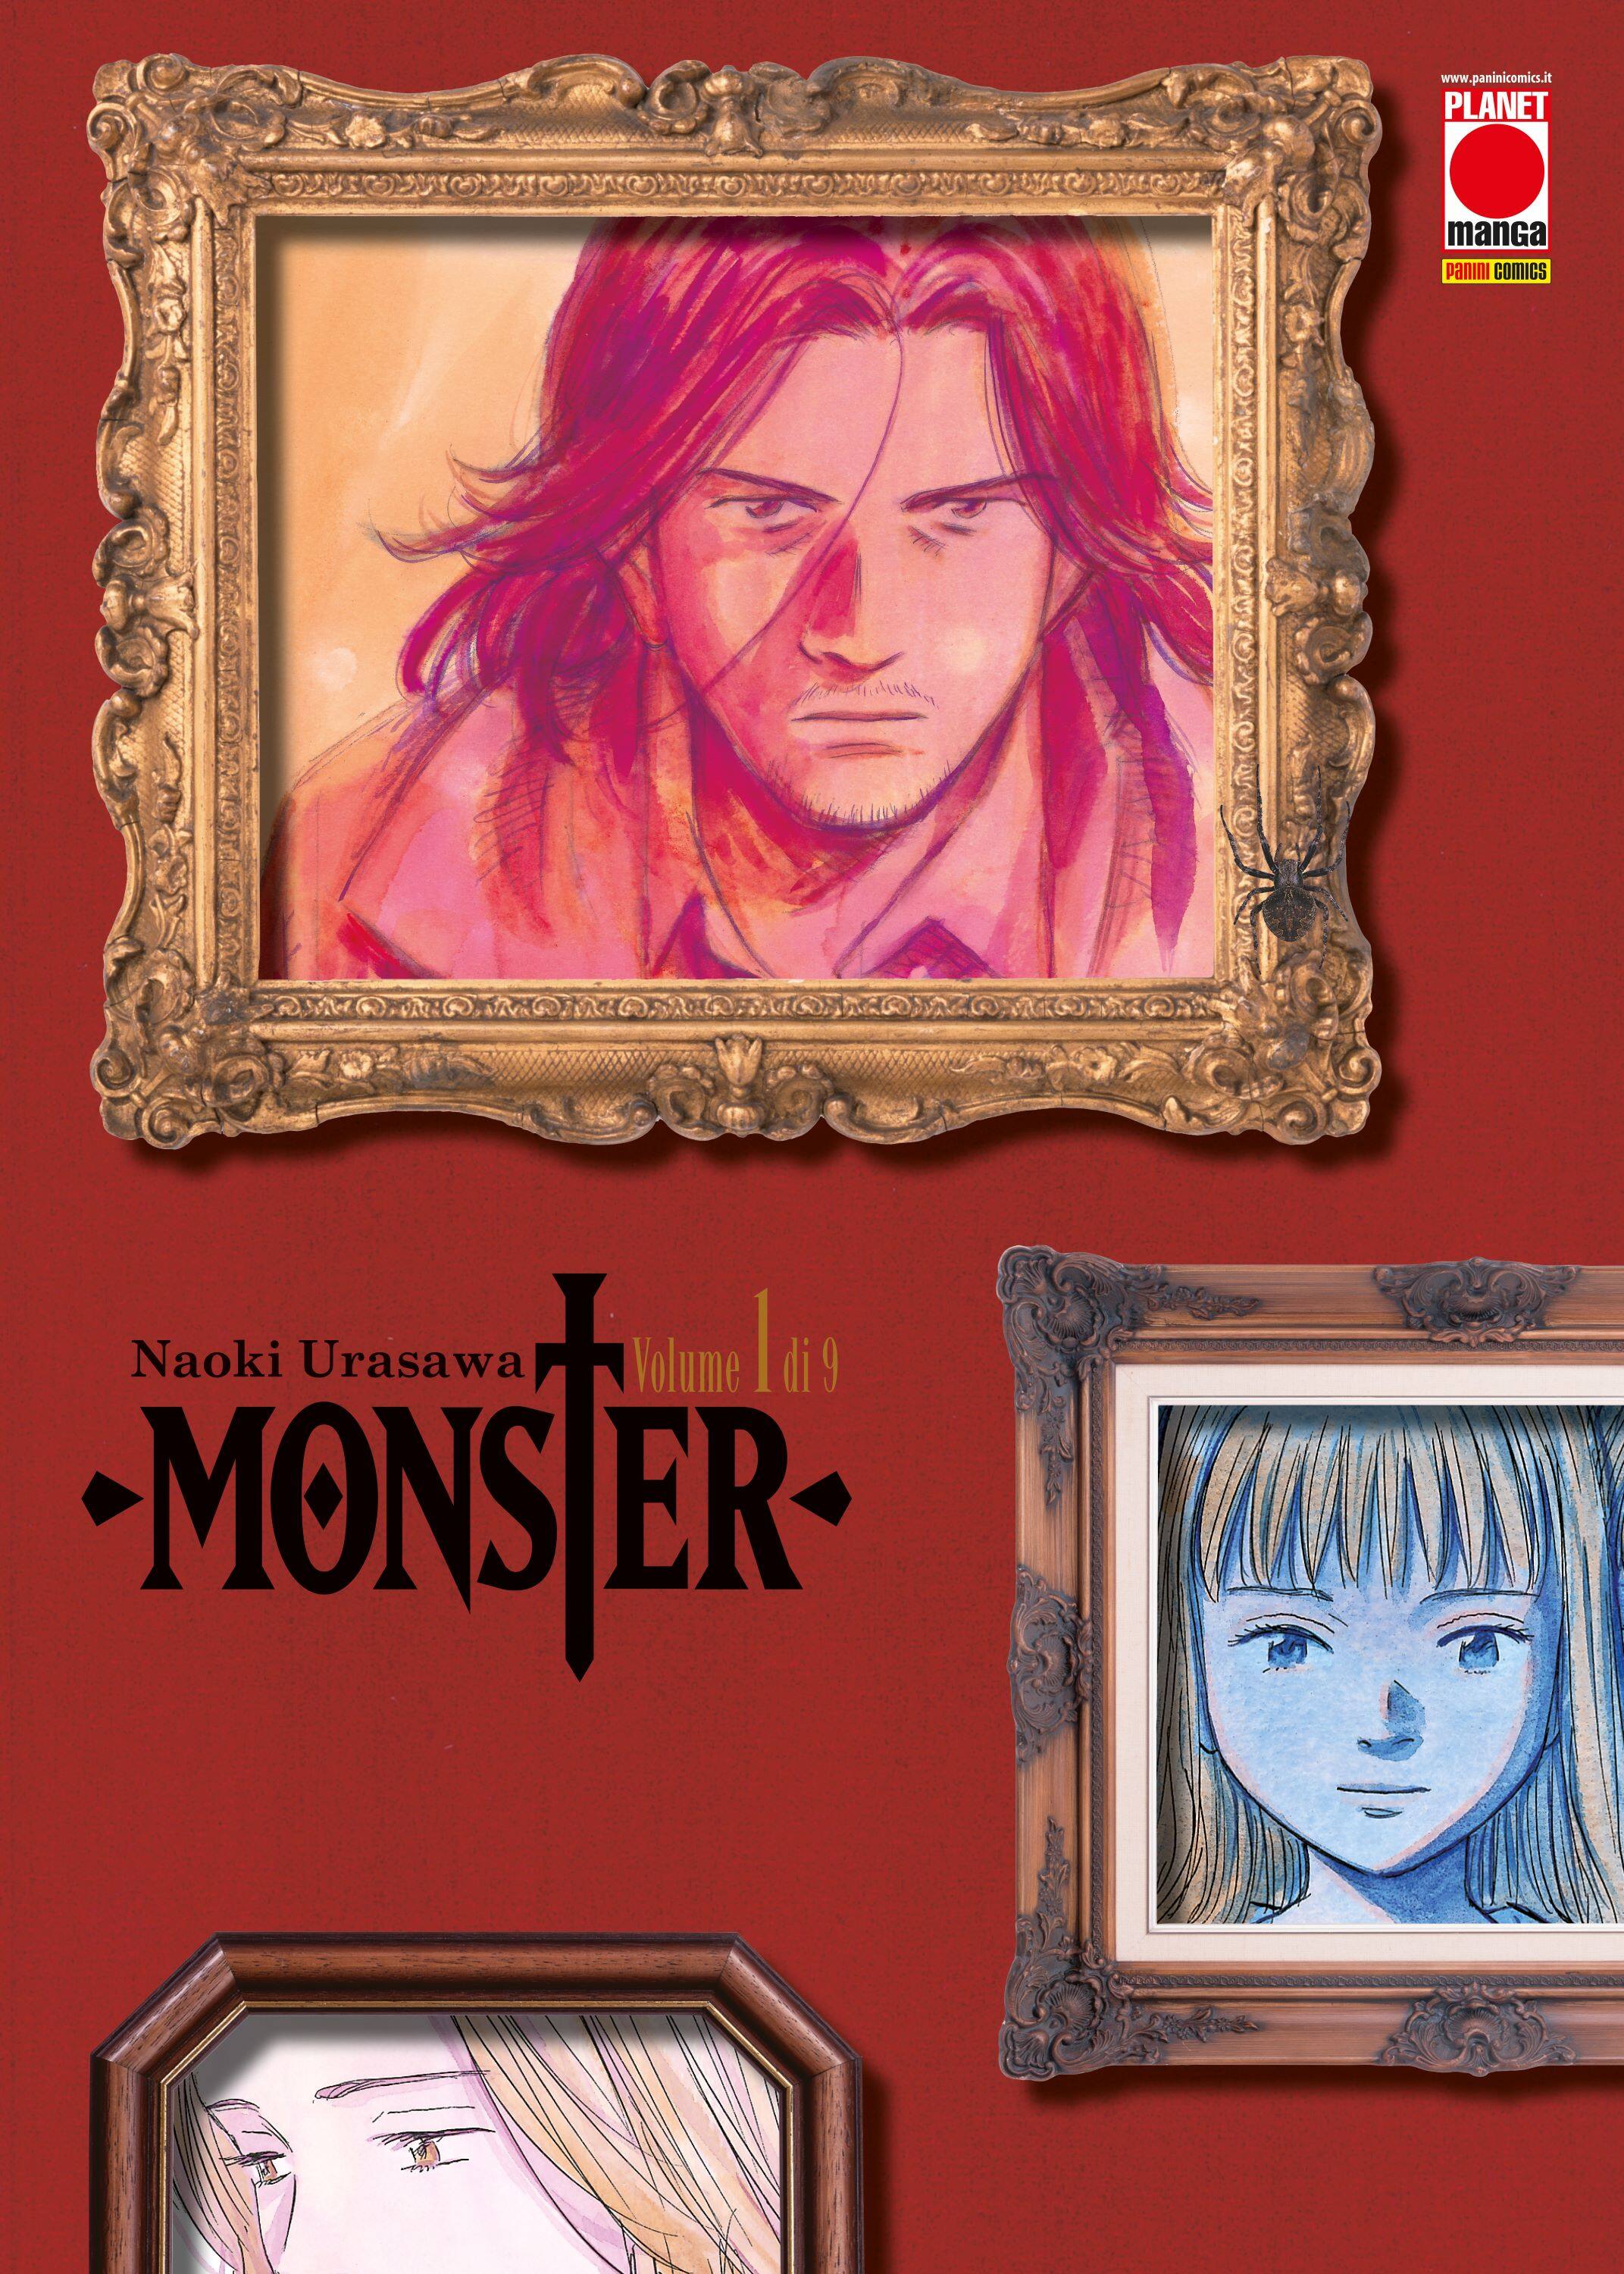 La copertina di Monster volume 1, pubblicato in Italia da Panini Comics - Planet Manga